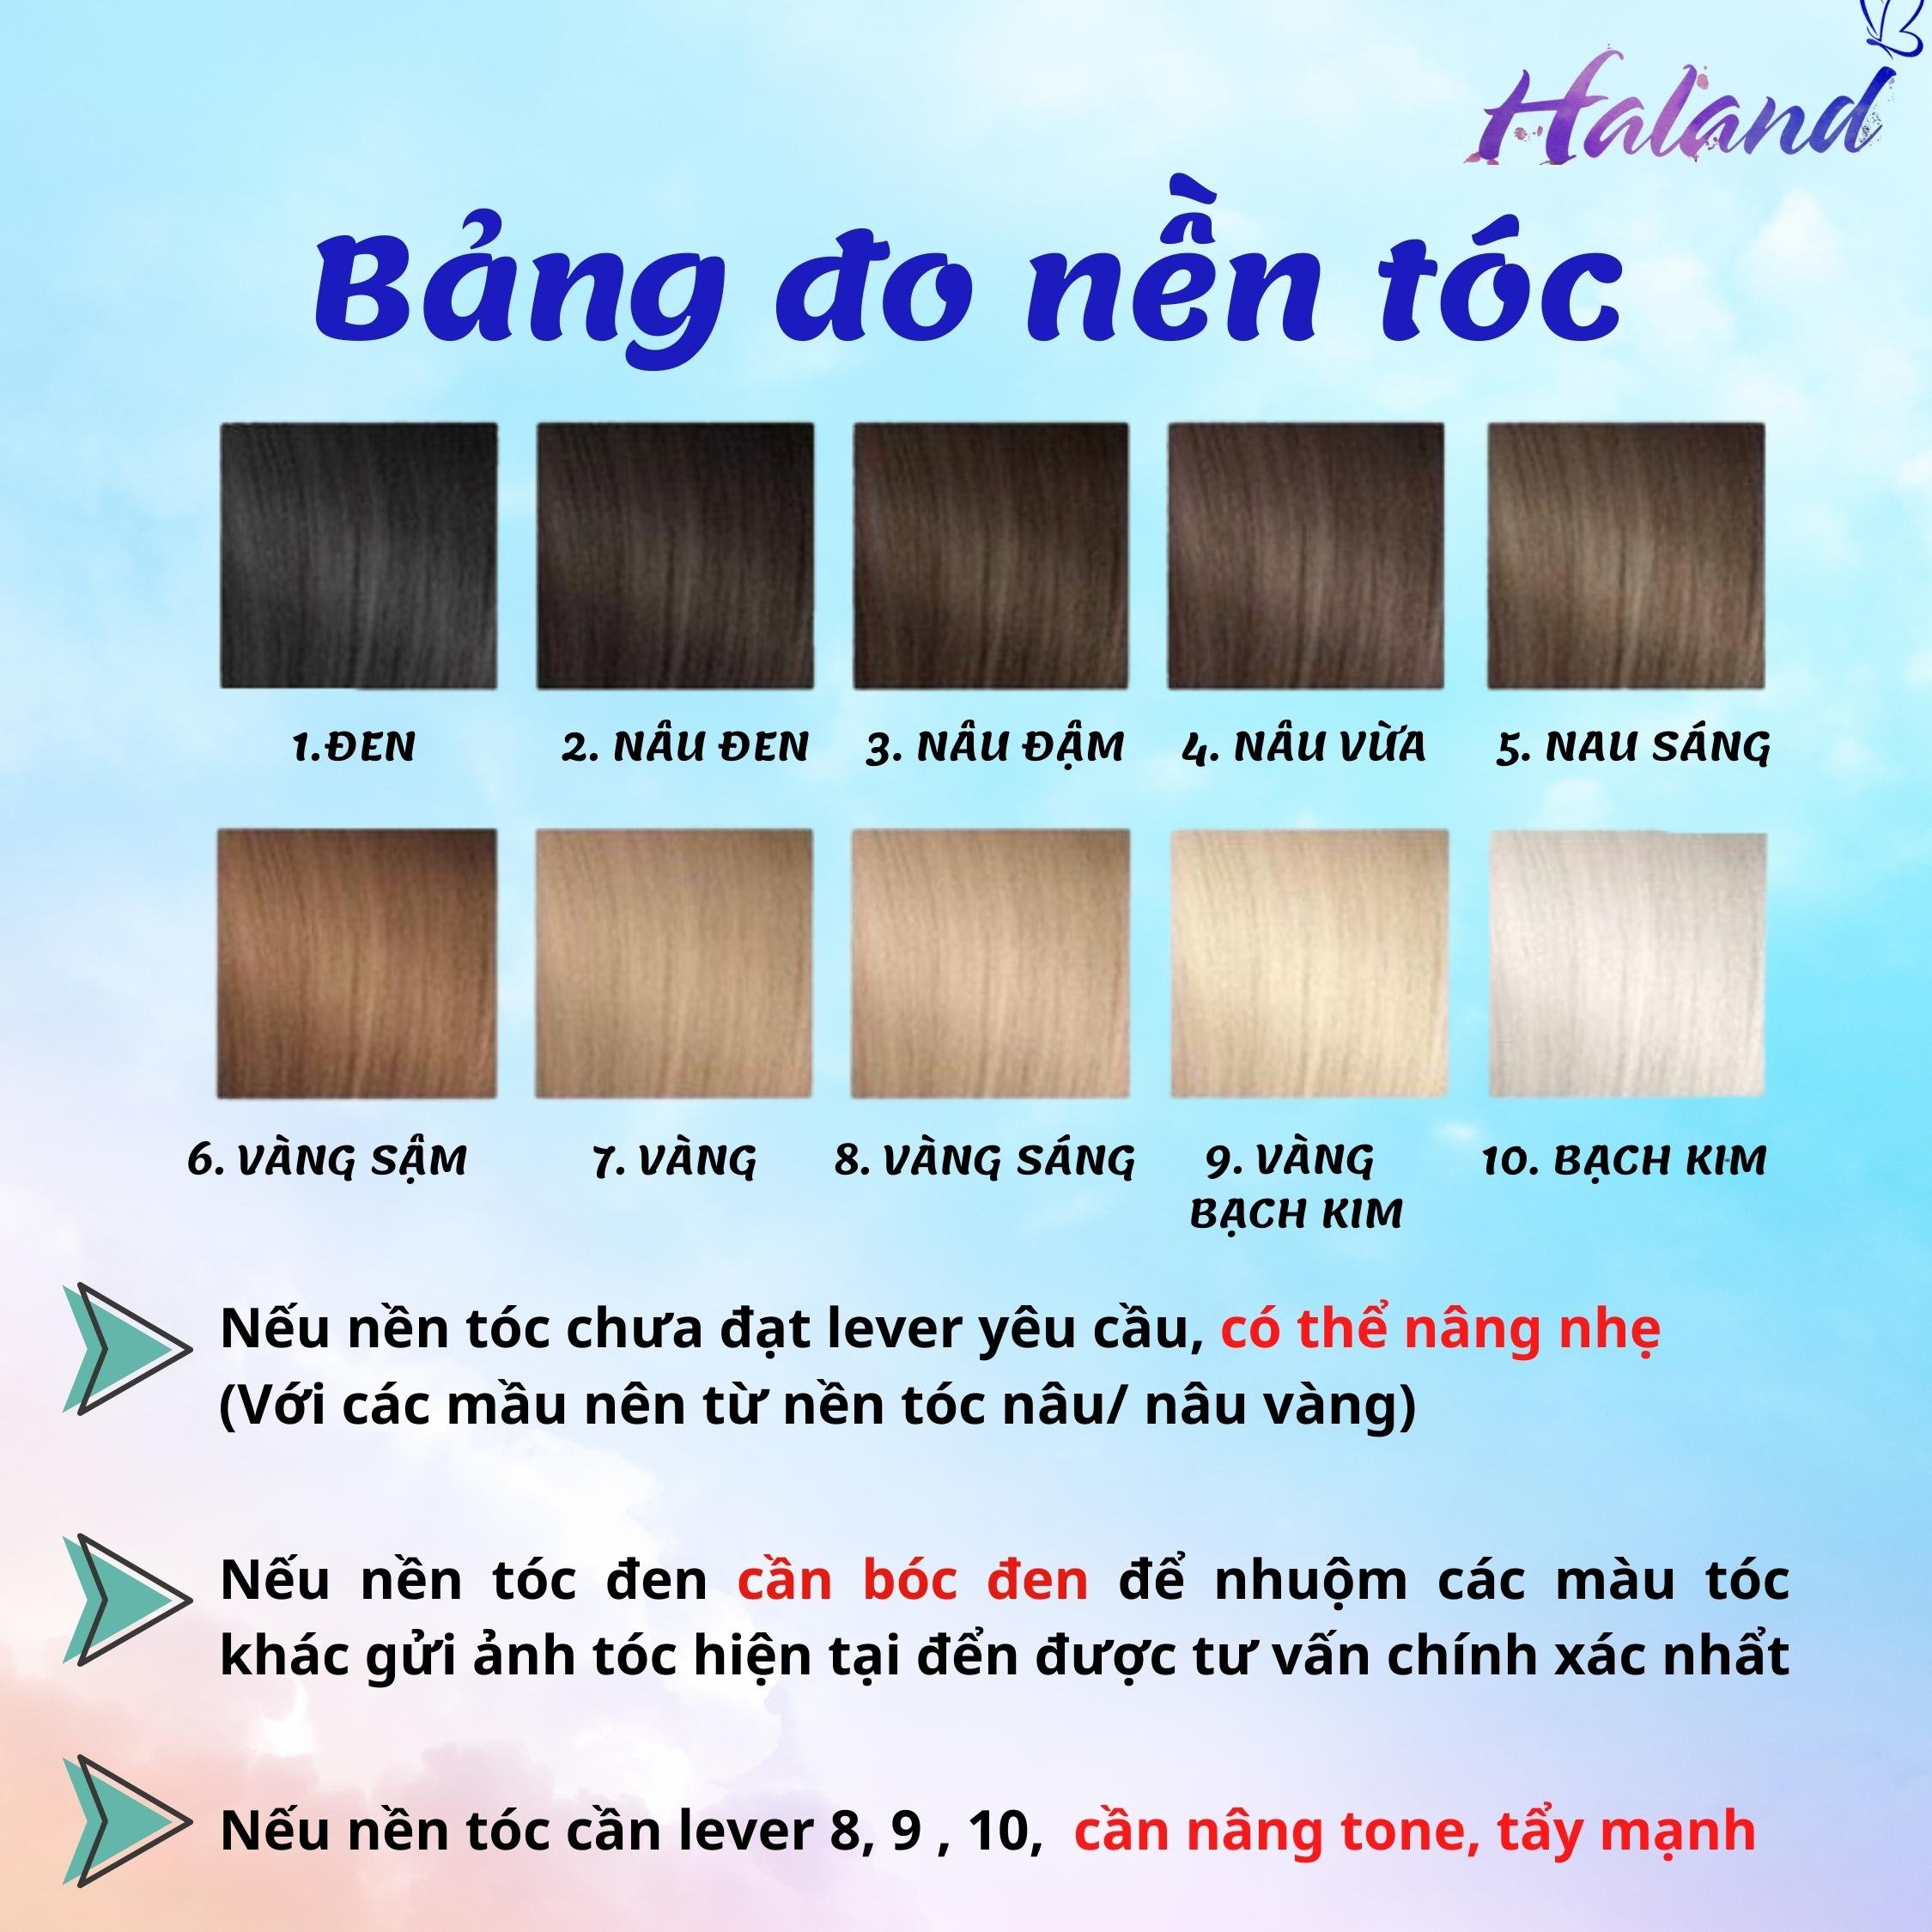 Nhuộm tóc màu than chì - xu hướng làng tóc Việt 2020